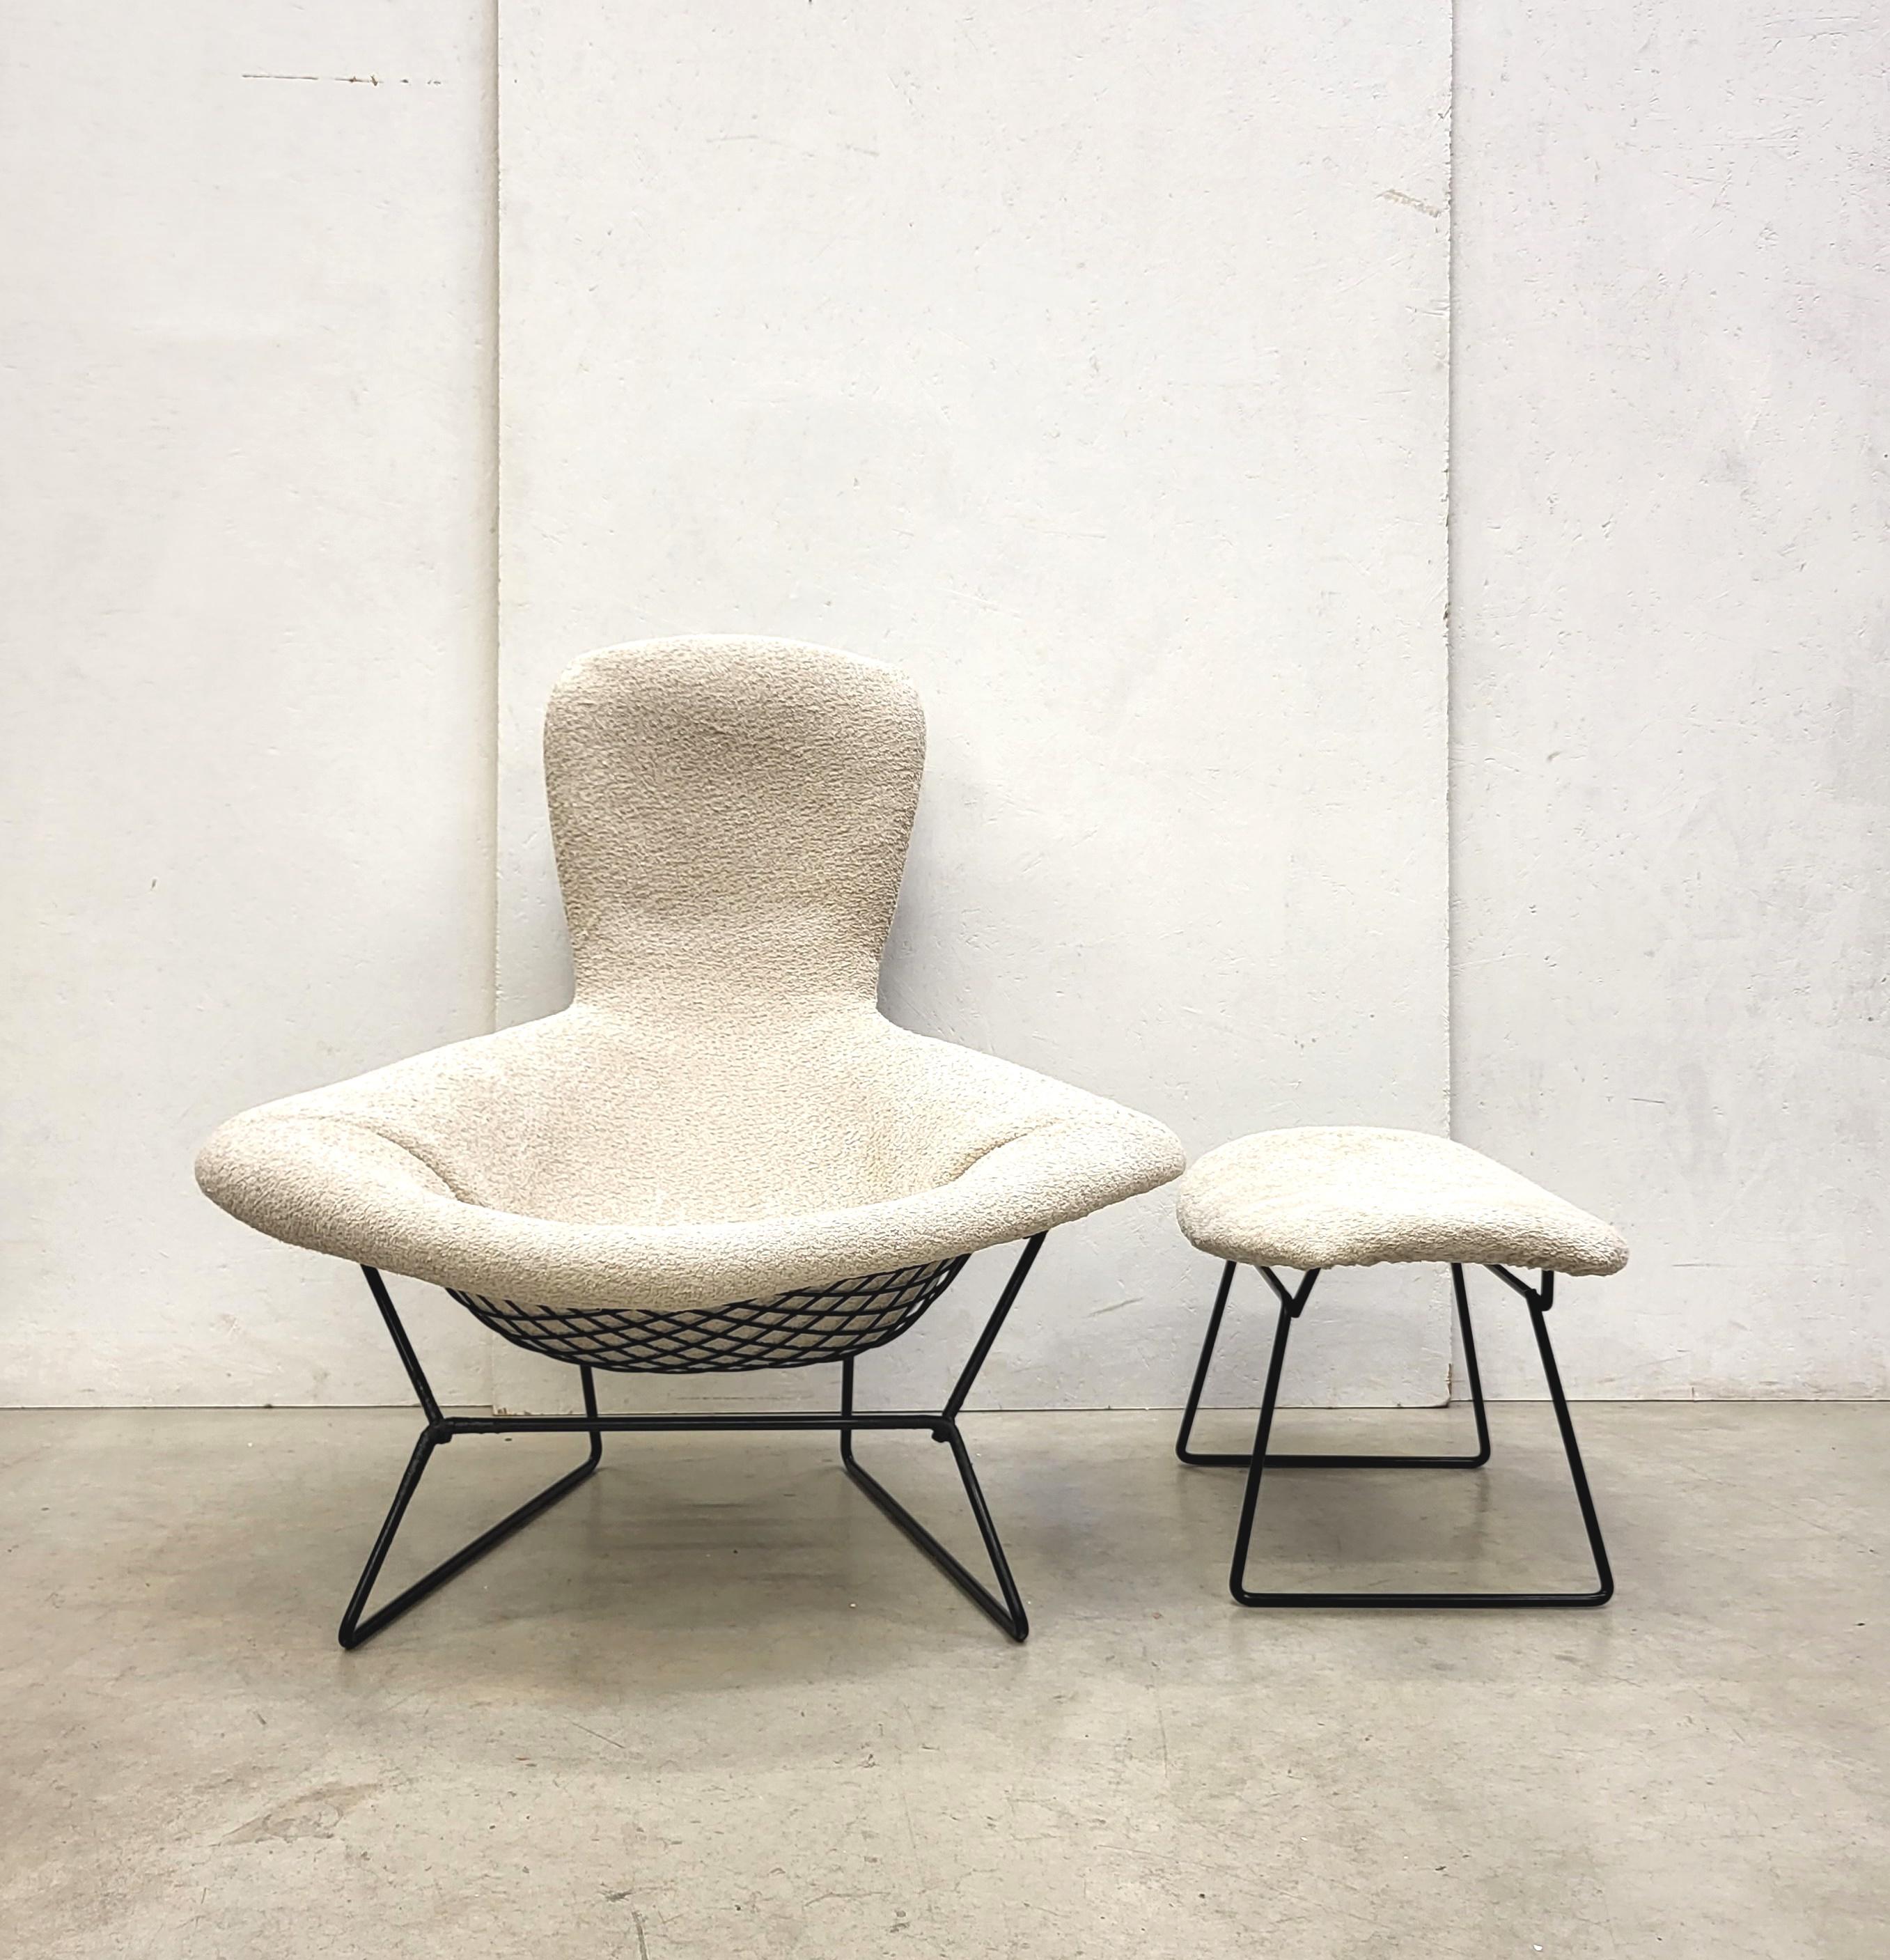 Early Bouclé Wolle Edition Bird Stuhl und Ottomane von Harry Bertoia für Knoll. 

Der bahnbrechende Bird-Stuhl wurde in den 50er Jahren von Harry Bertoia entworfen und von Knoll hergestellt.
Dieser Klassiker aus der Mitte des Jahrhunderts bietet